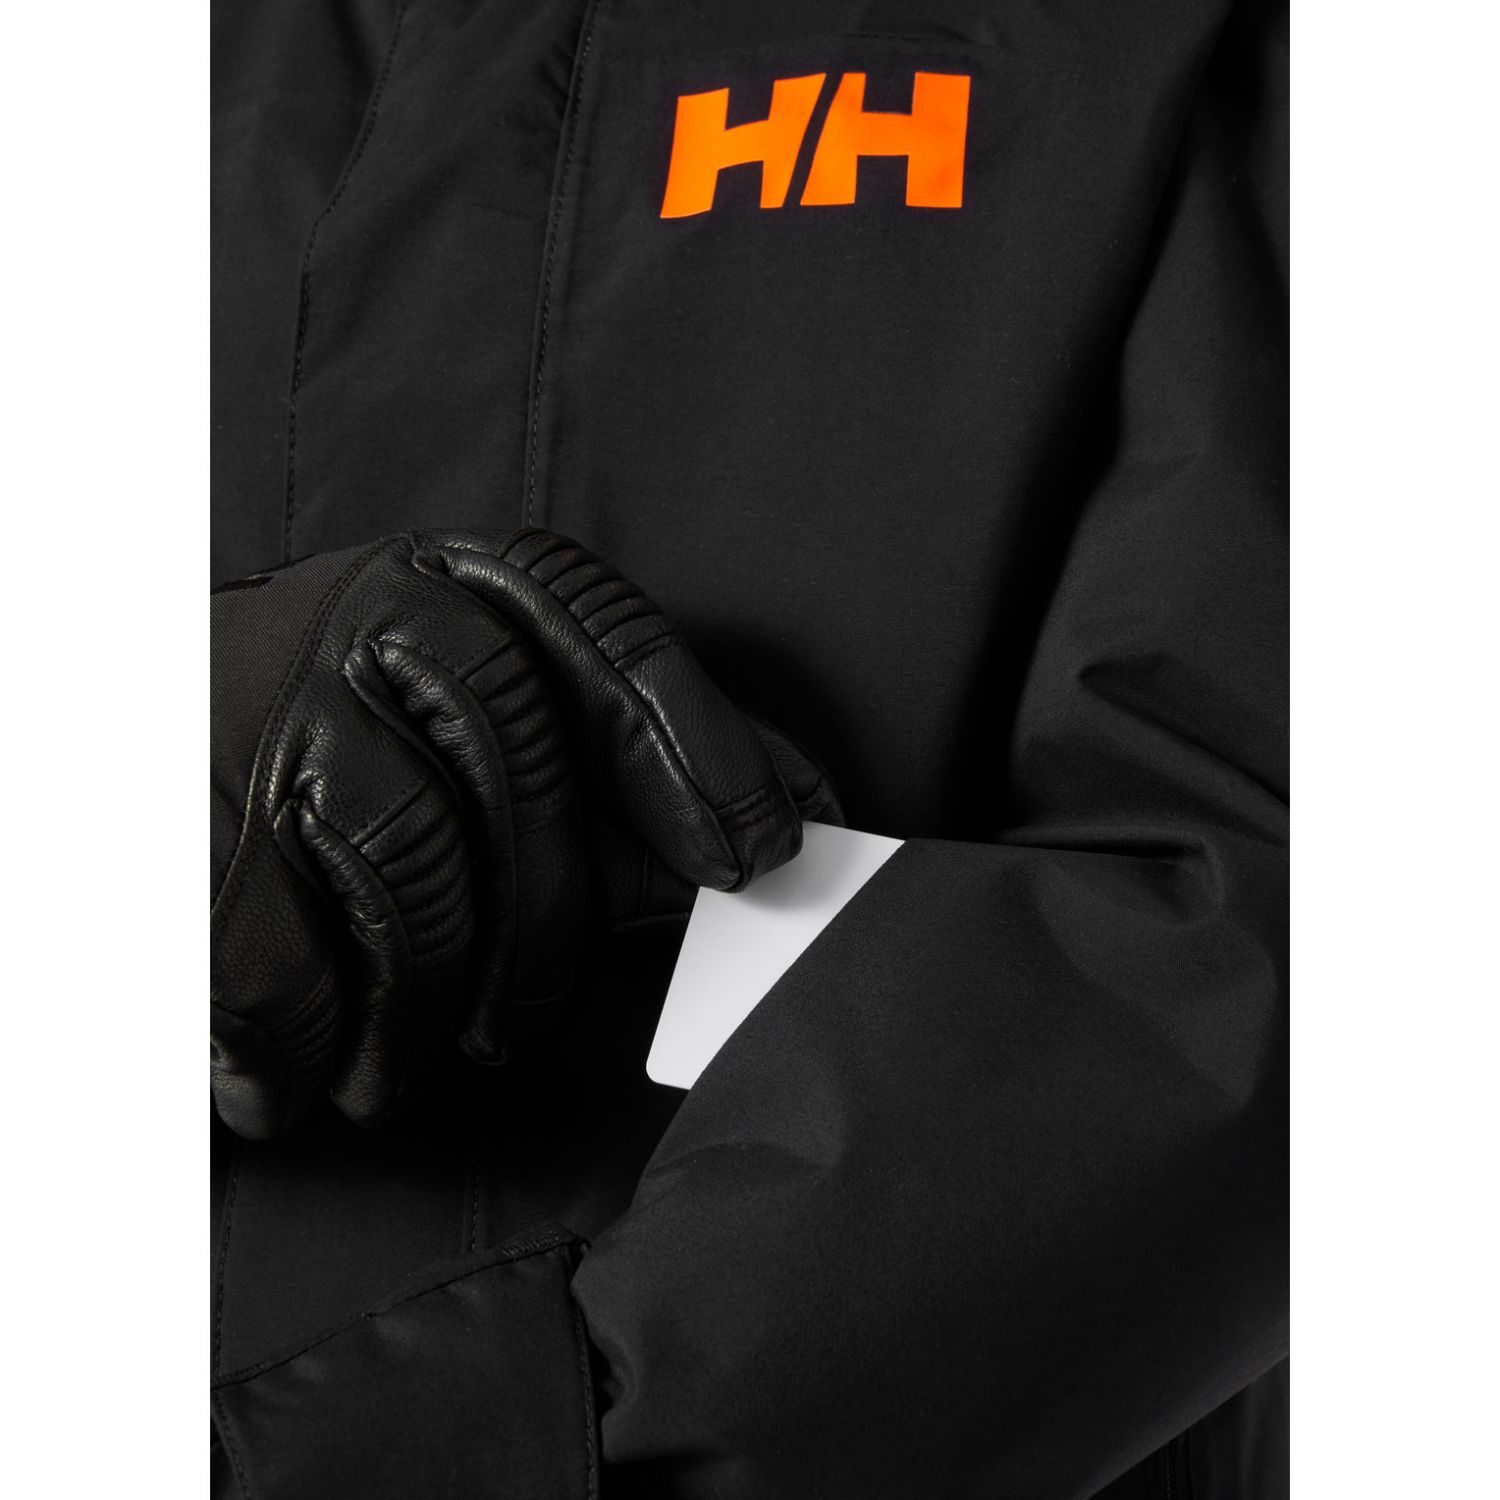 Helly Hansen JR Level, ski jas, junior, zwart